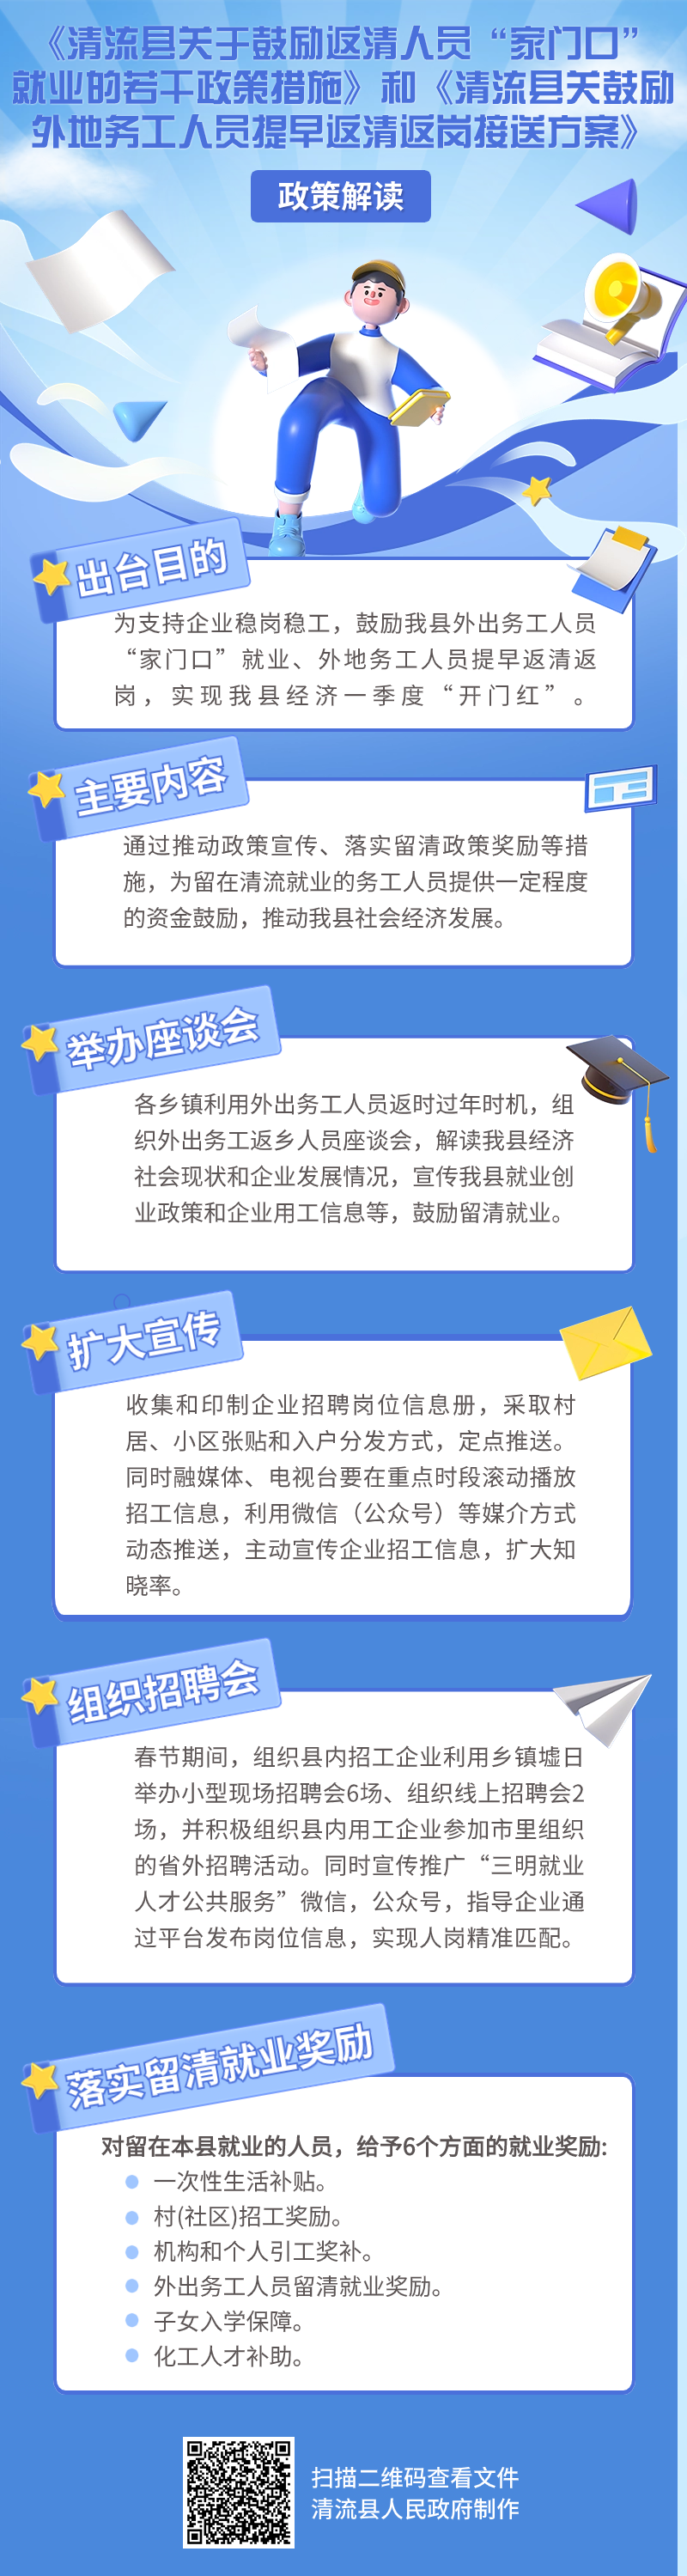 《清流县关于鼓励返清人员“家门口”就业的若干政策措施》和《清流县.png